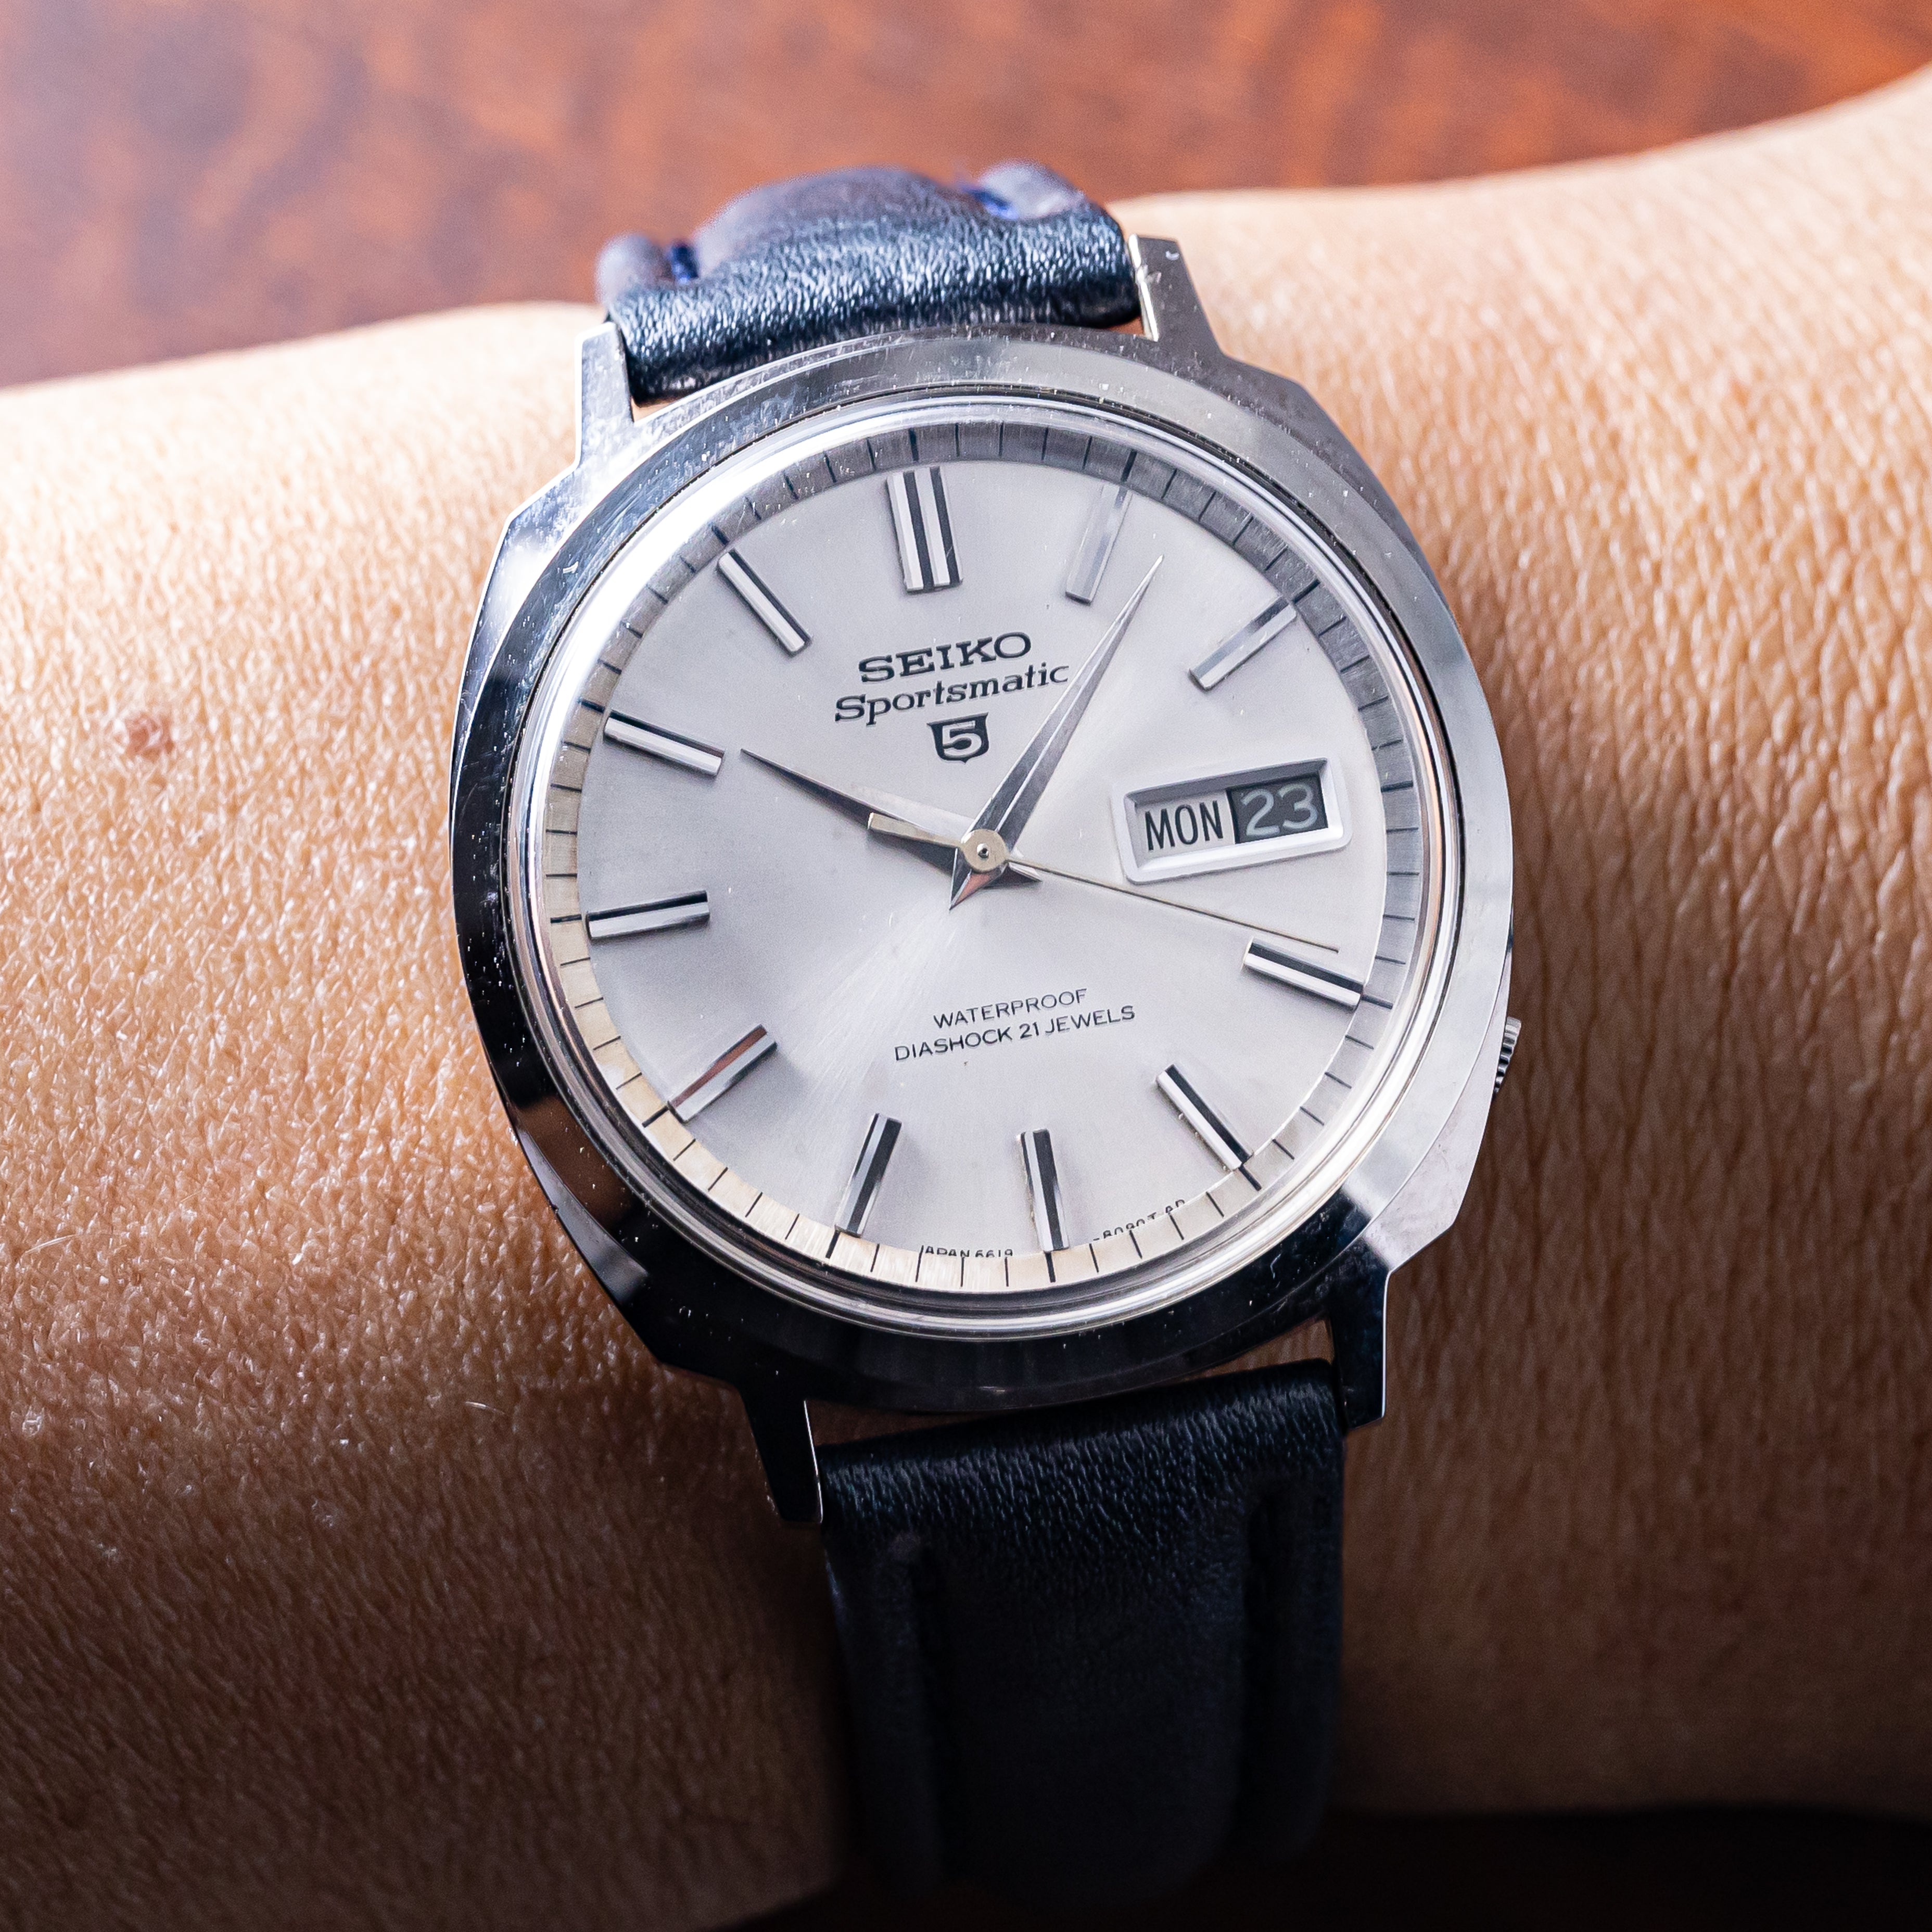 SEIKOスポーツマチック ファイブ デラックス 自動巻き腕時計 - 時計